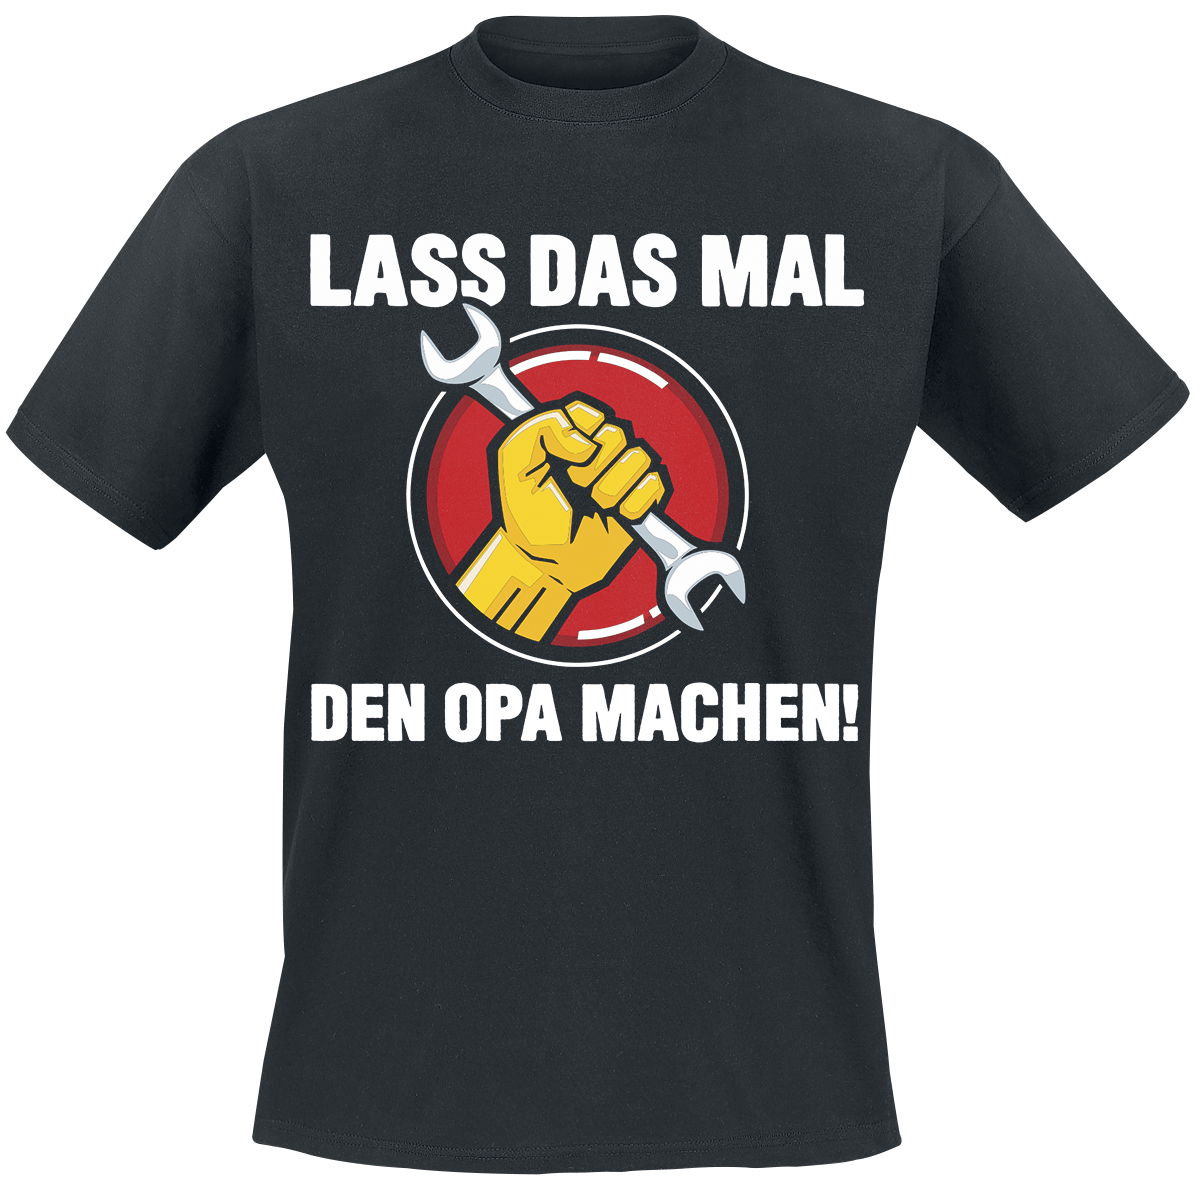 Familie & Freunde - Lass das mal den Opa machen - T-Shirt - schwarz - EMP Exklusiv!